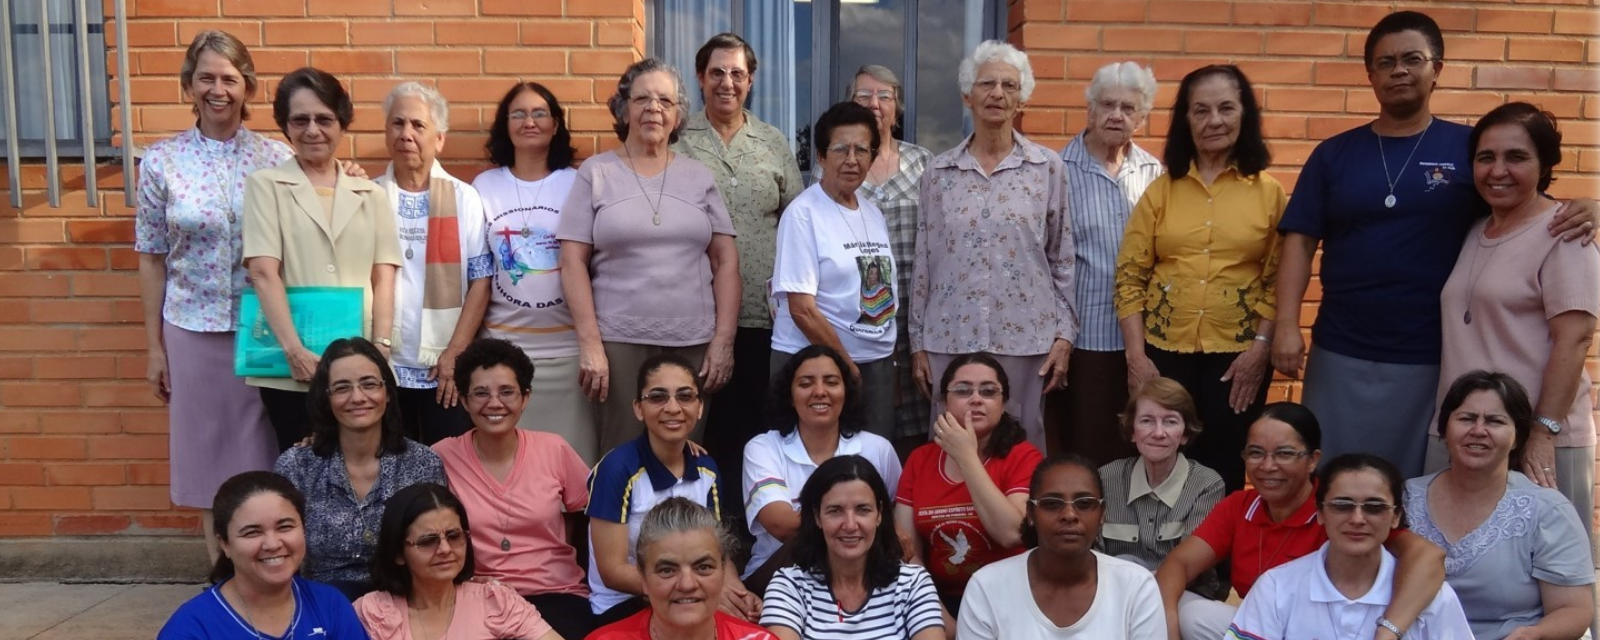 Grupo de senhoras reunidas, representando a formação da congregação.